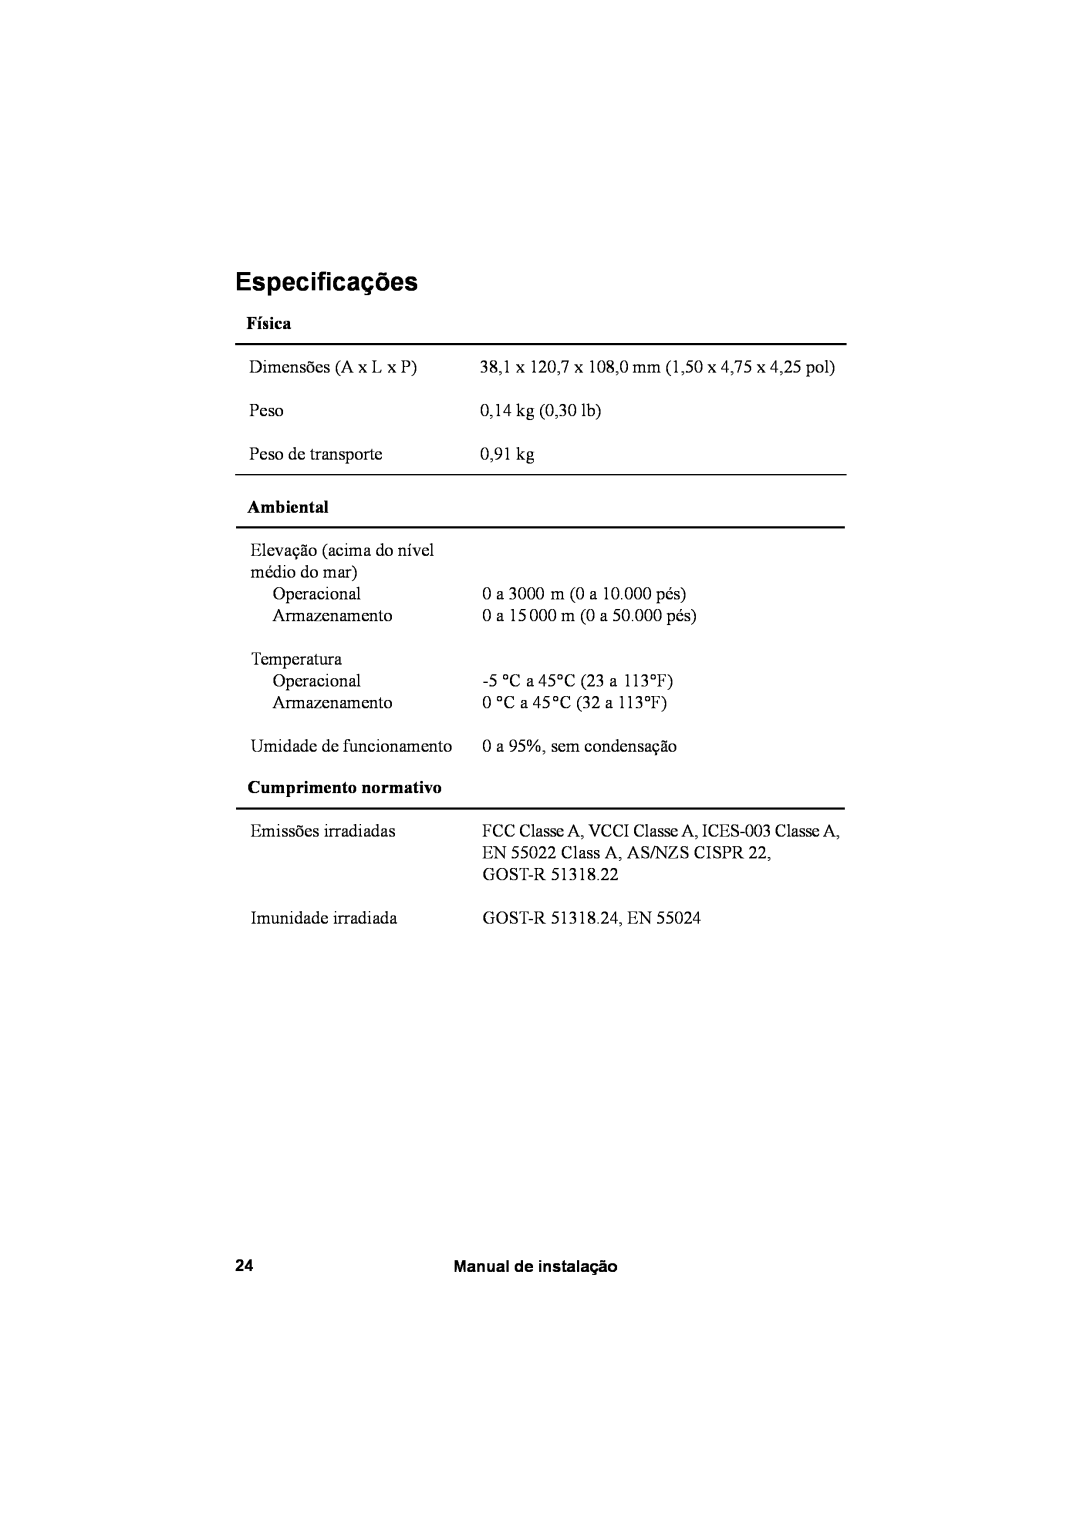 APC AP9631, AP9630 manual Especificações, Física, Ambiental, Cumprimento normativo 